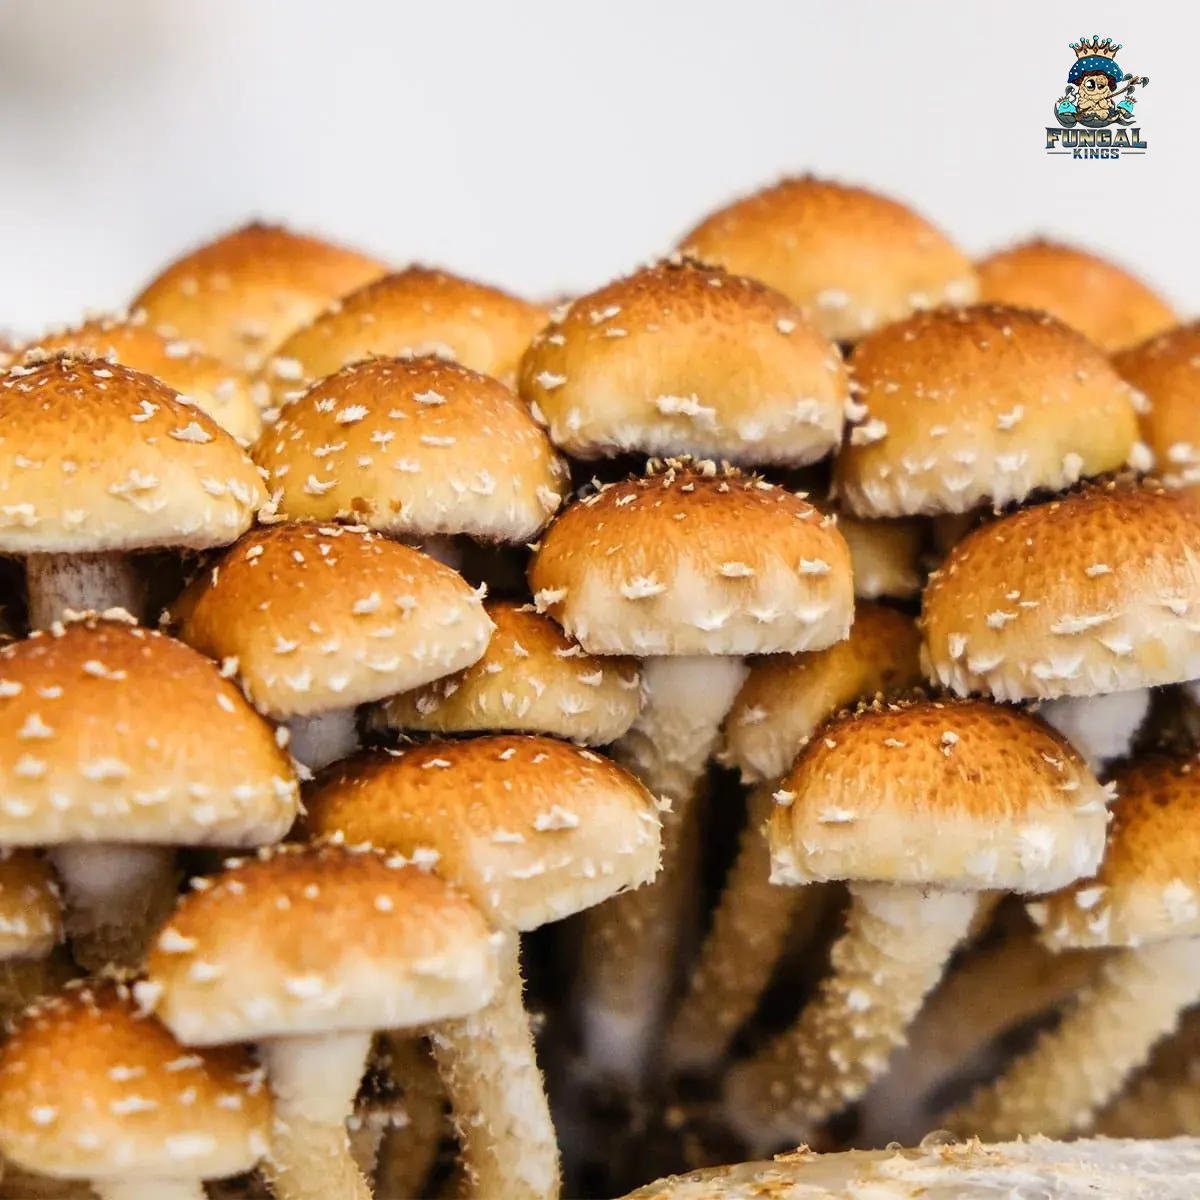 Chestnut Mushrooms liquid culture